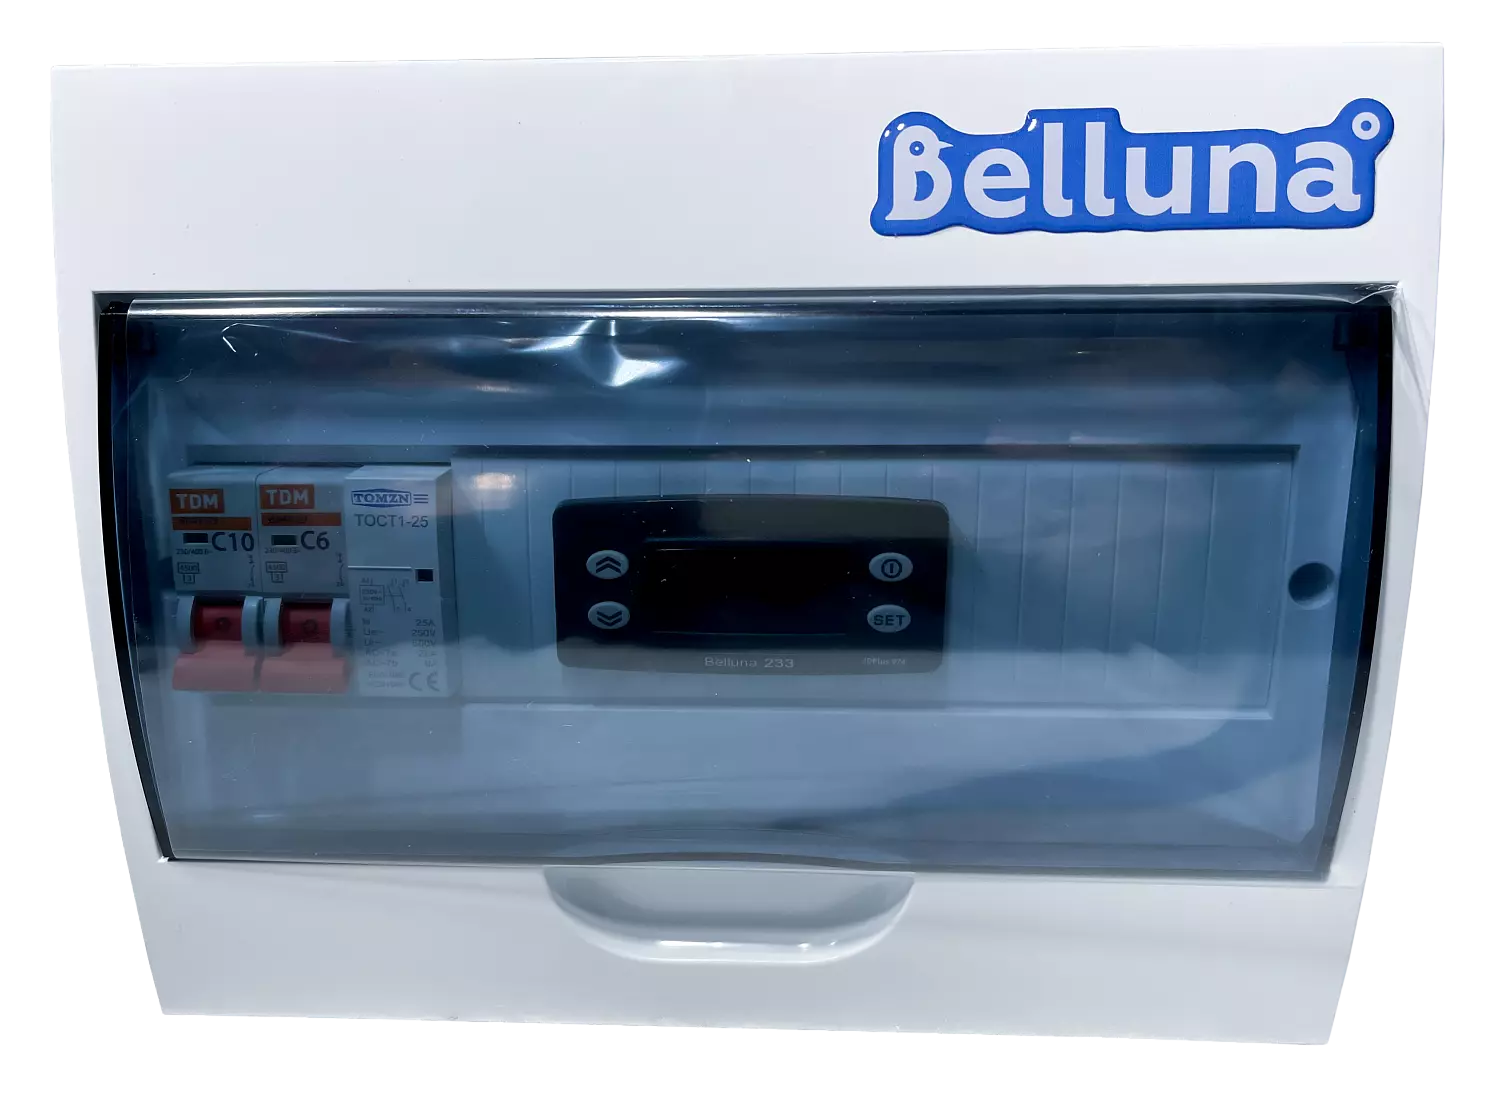 сплит-система Belluna S342 Пермь